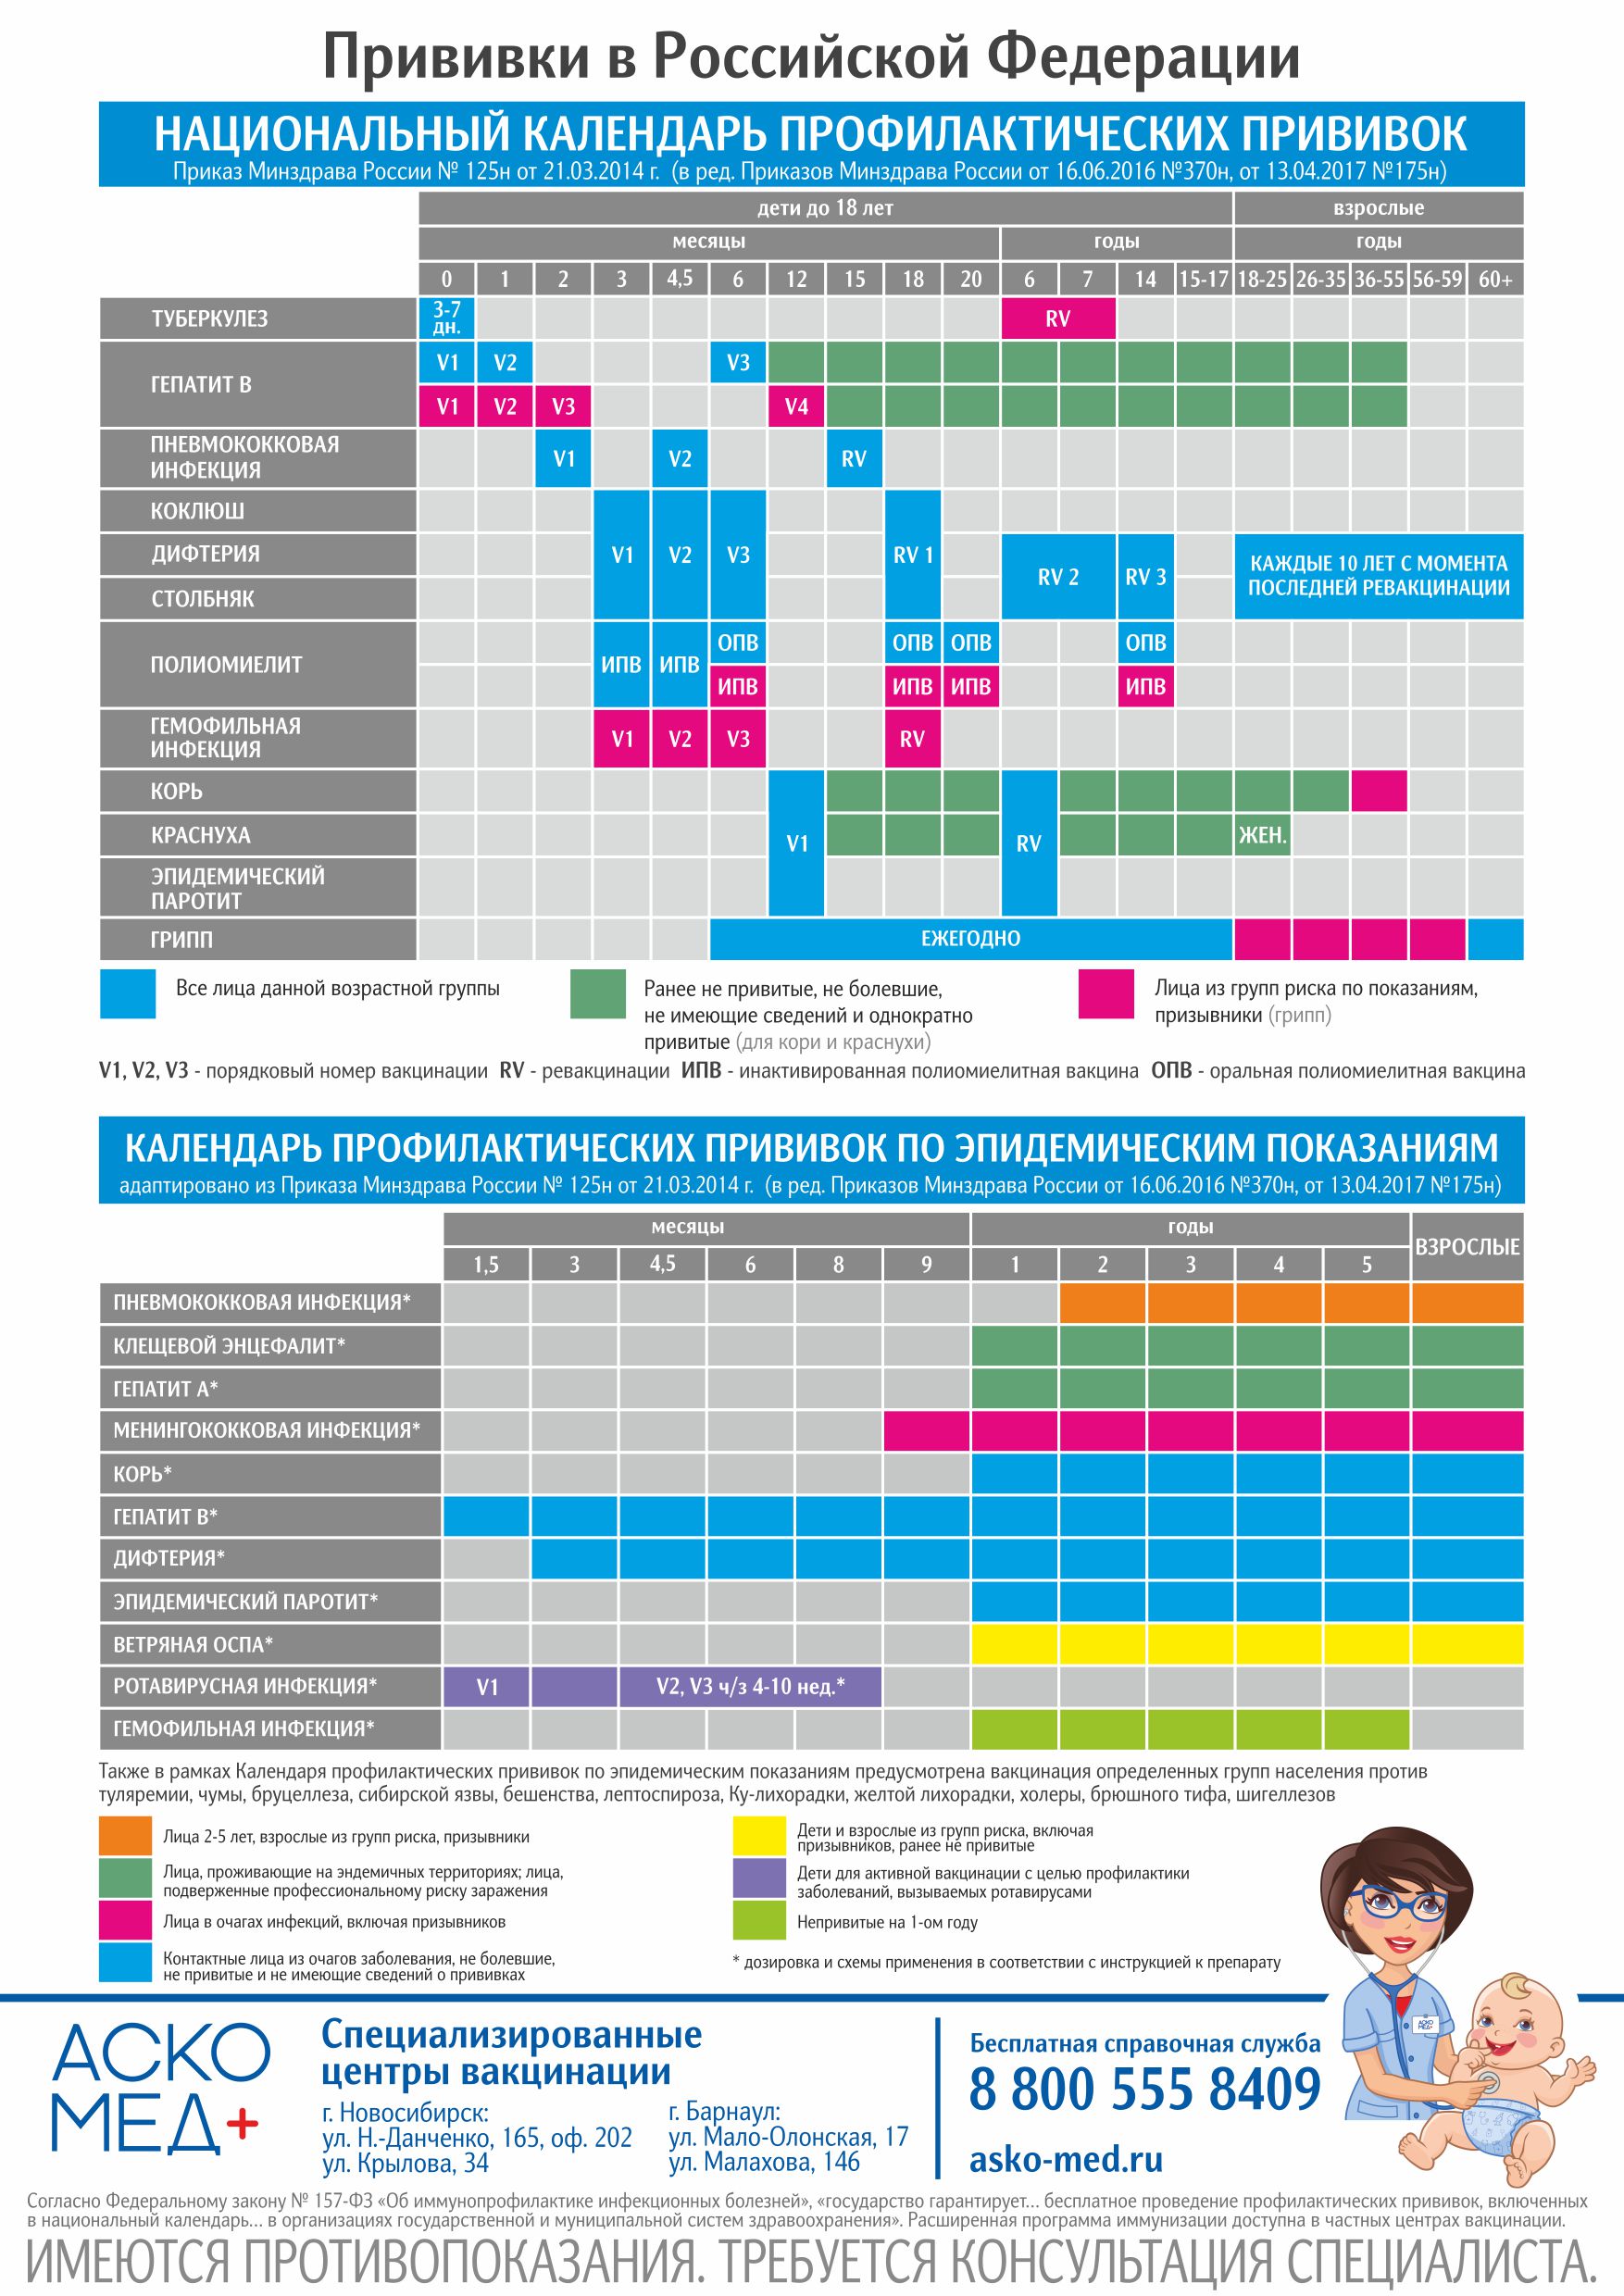 Детский календарь прививок: вакцинация детей, что, зачем и когда | Блог -  Аско-Мед-Плюс в Новосибирске и Барнауле